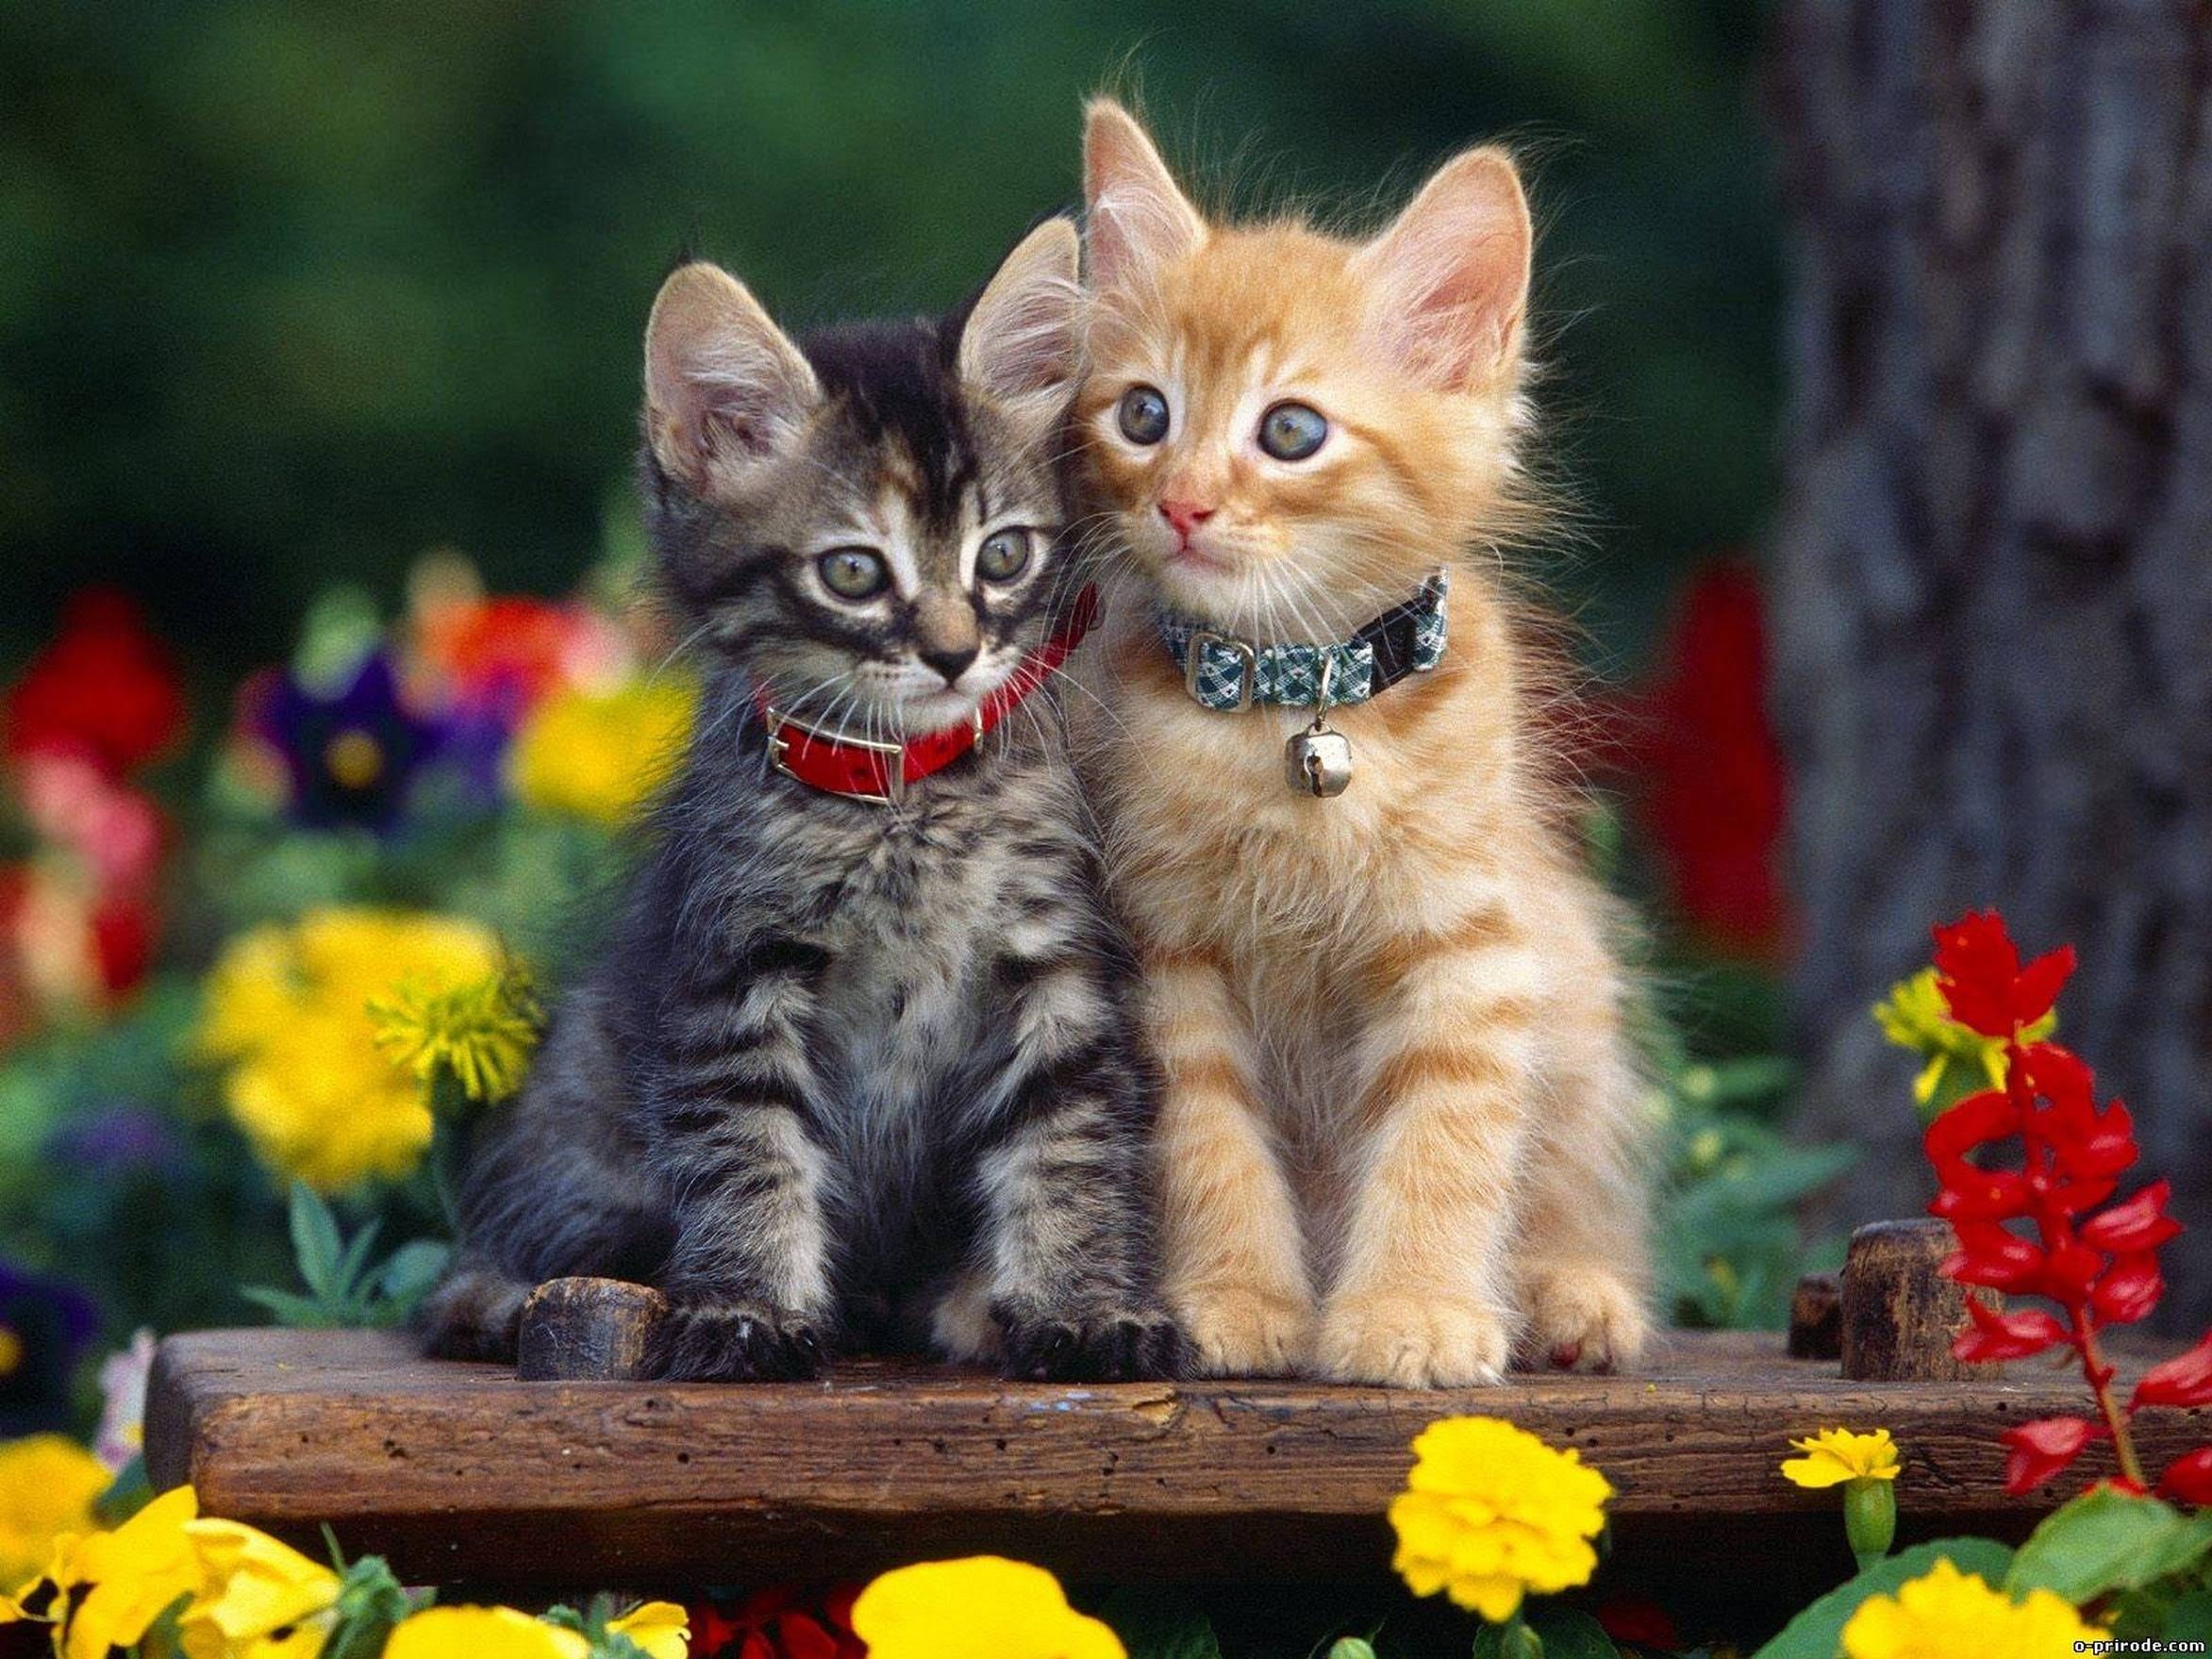 Hình ảnh đẹp giữa 2 chú mèo con thật đẹp đúng không nào